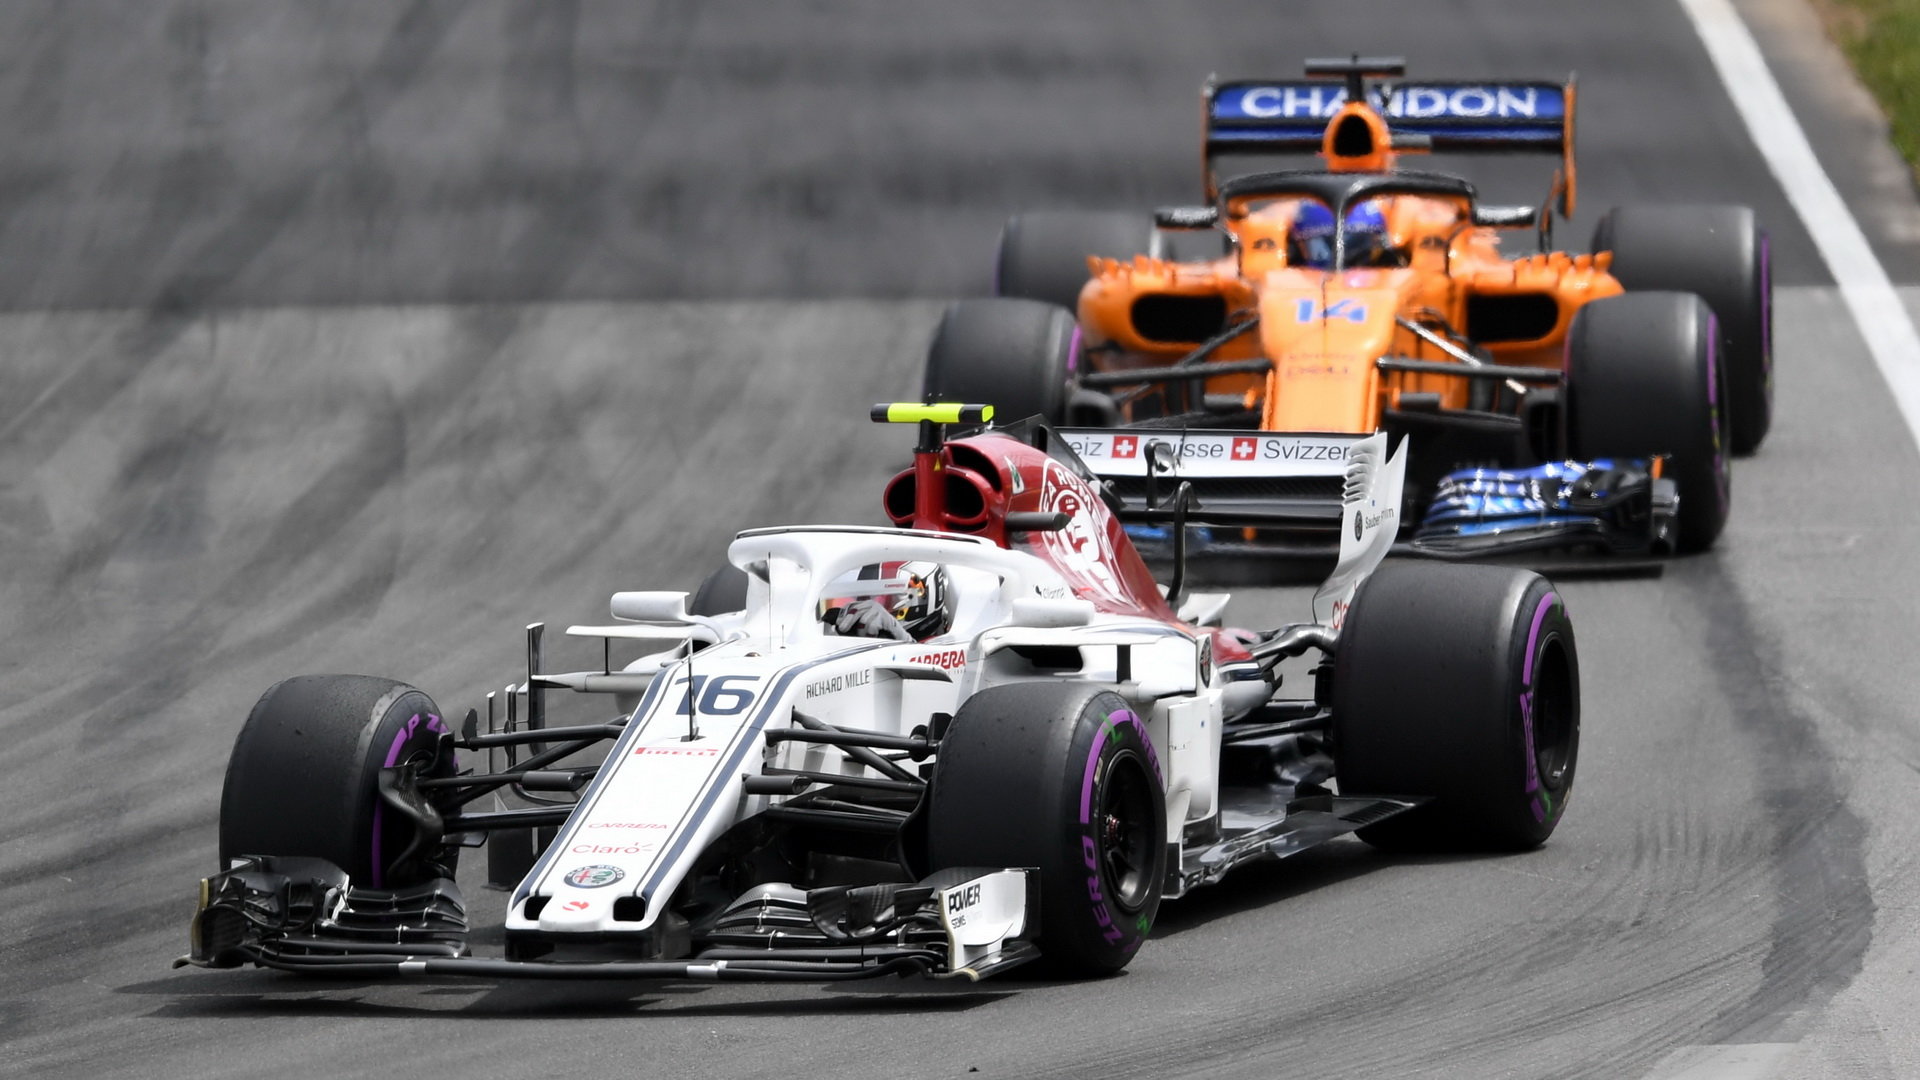 Alonso v Montrealu za Leclercem - McLaren očekával, že bude mít konkurenceschopnější vůz